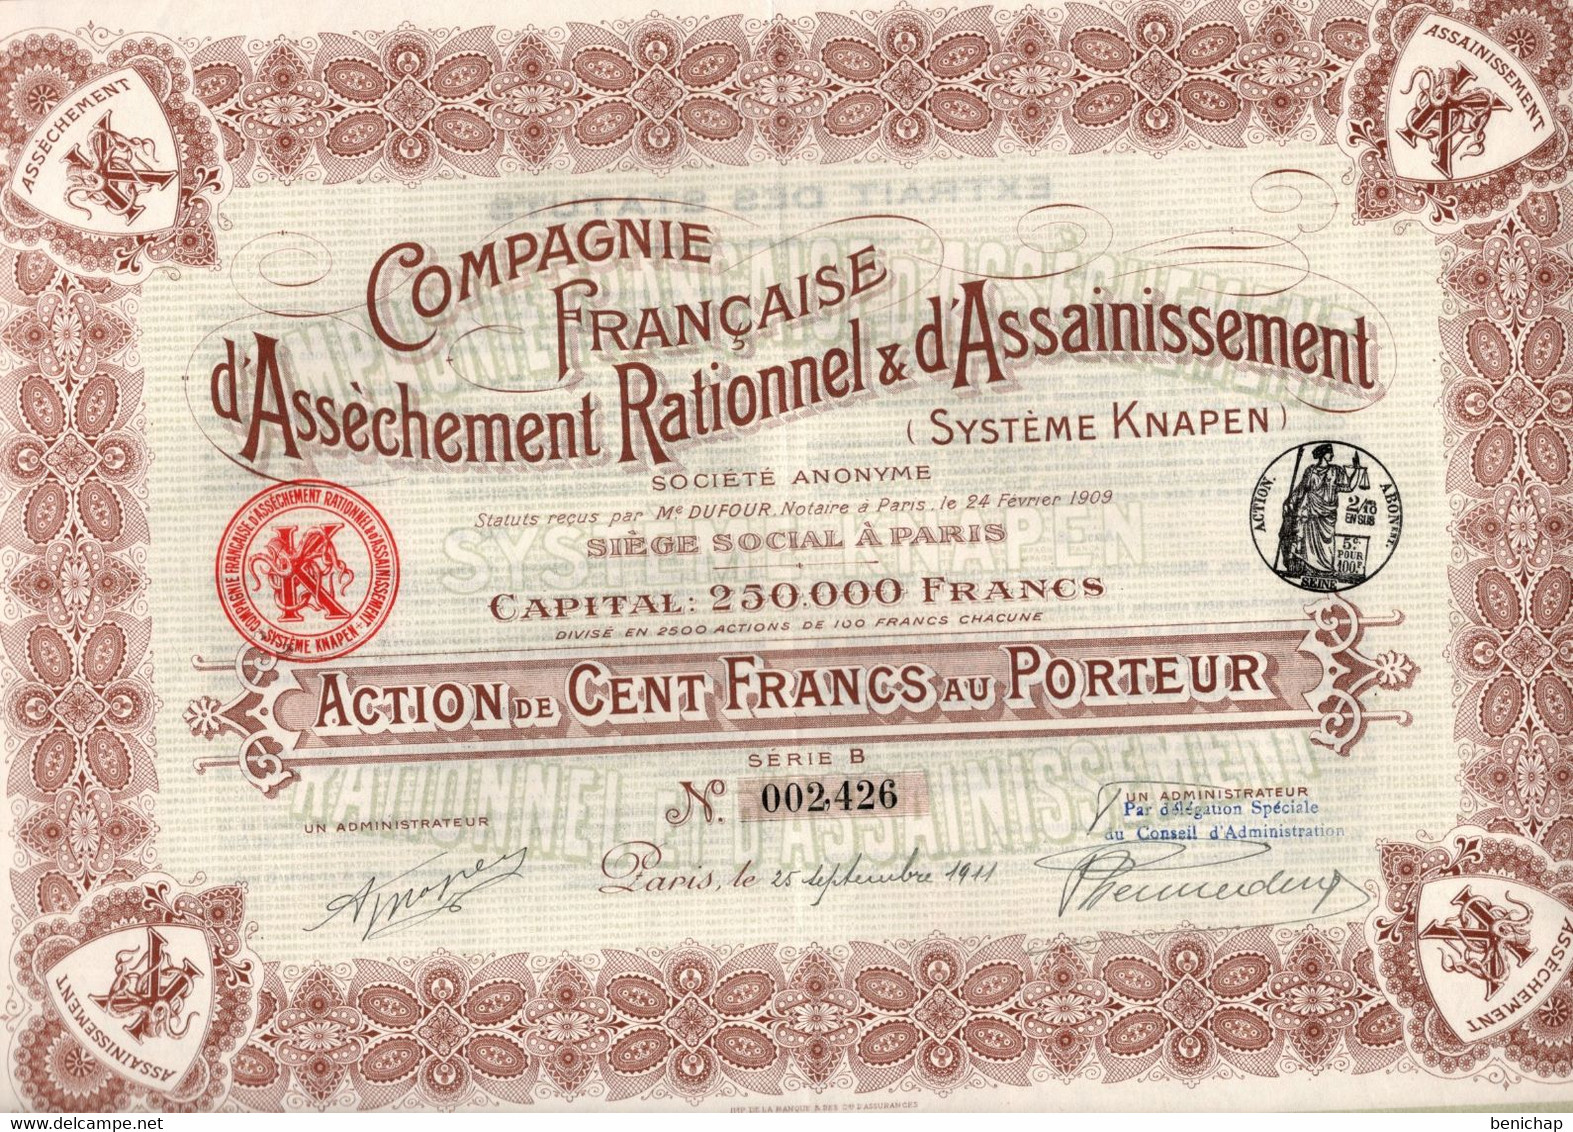 Action De 100 Frcs Au Porteur - Compagnie Française D'Assèchement Rationnel & D'Assainissement Knapen - Paris 1911 - Eau